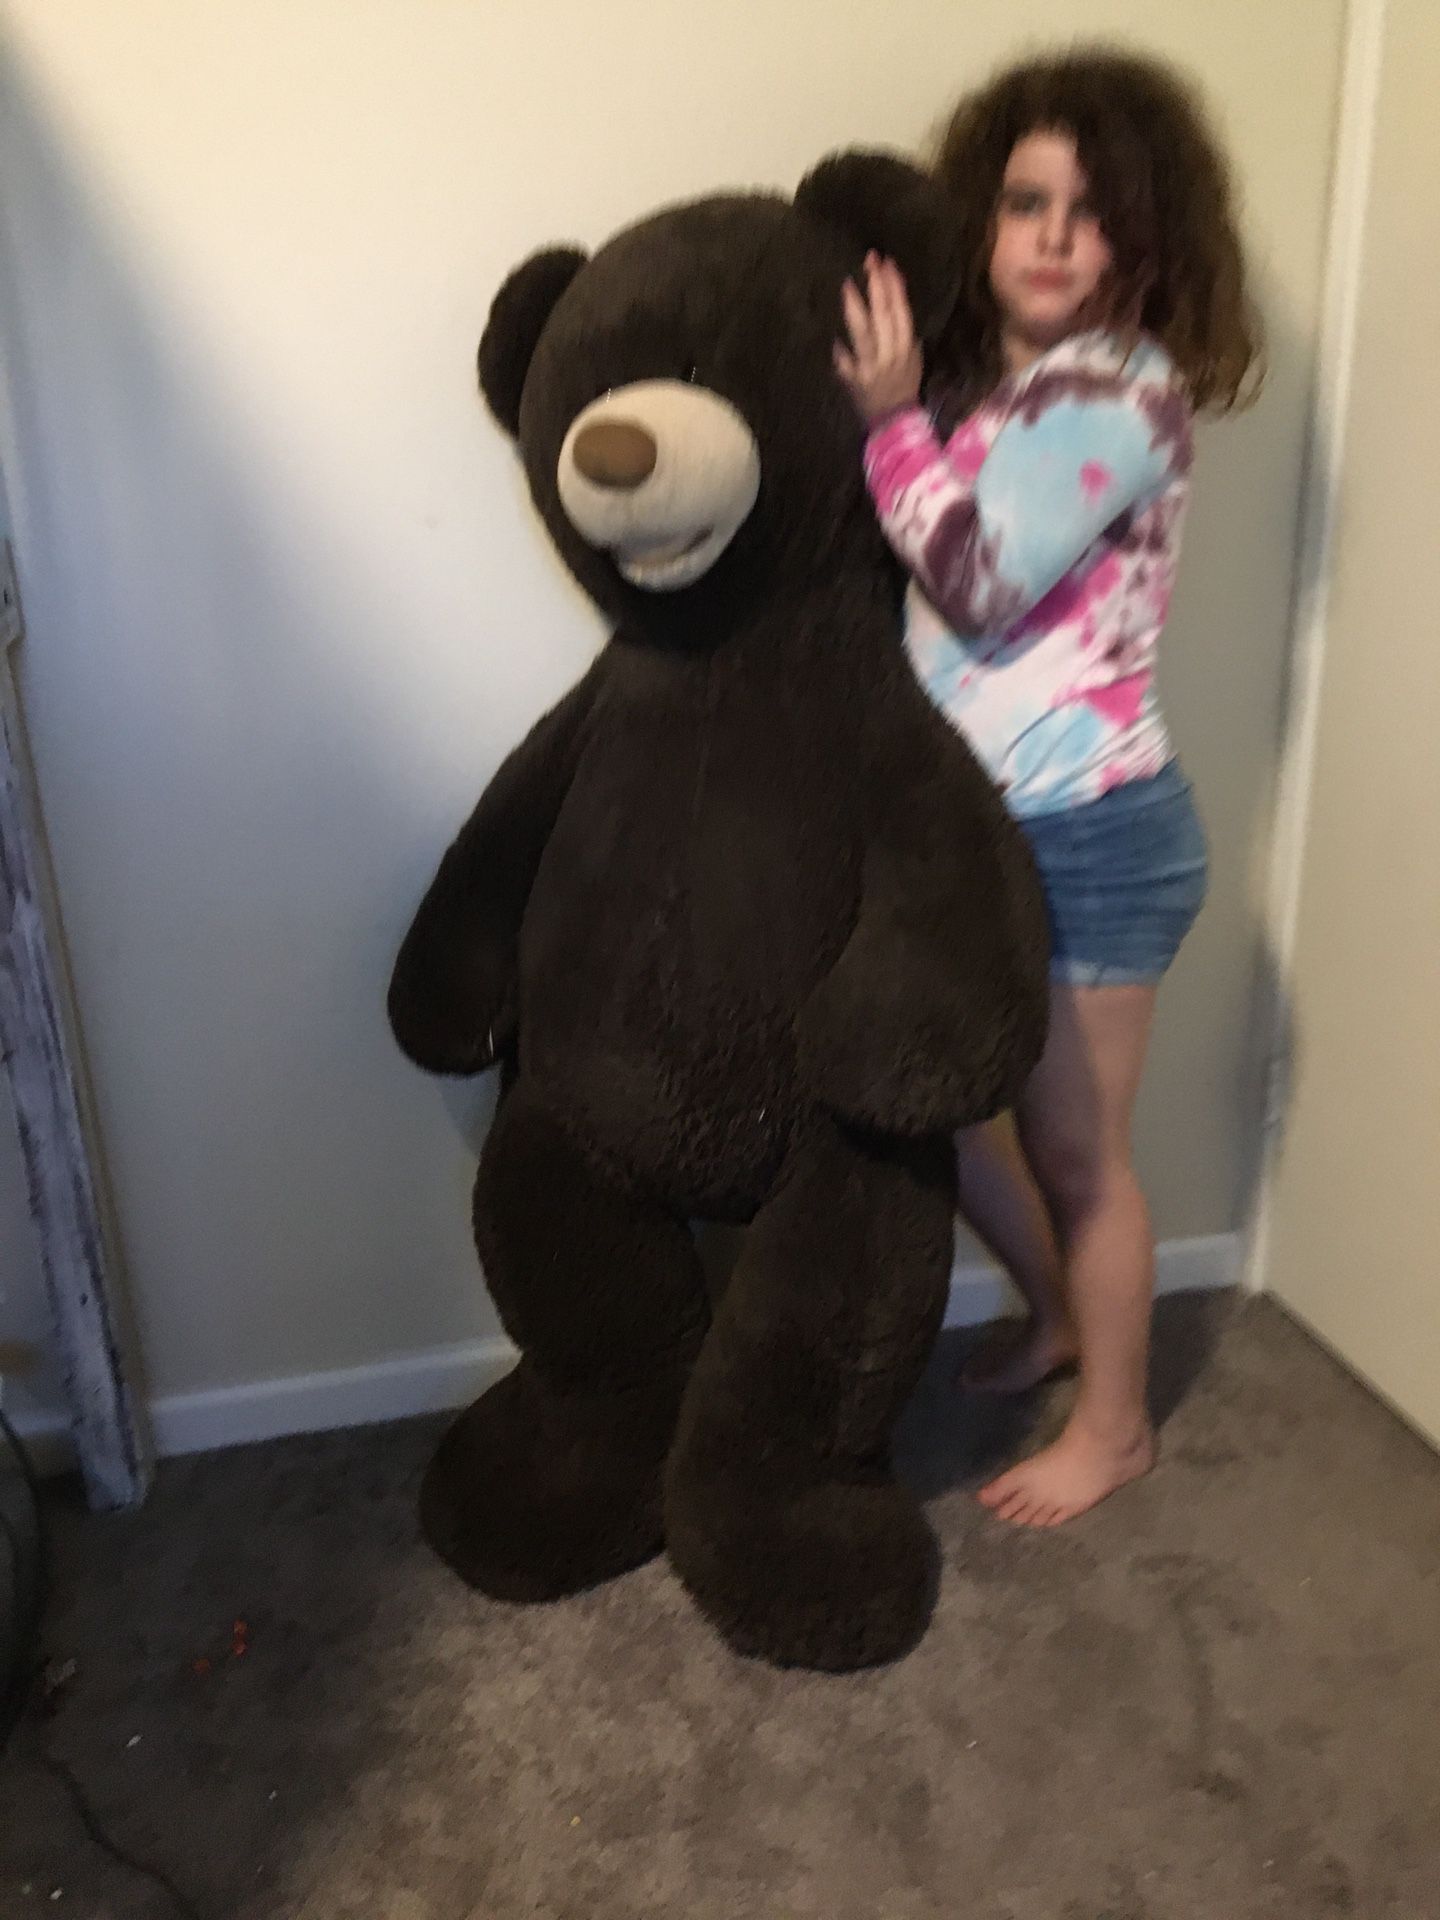 Giant teddy bear